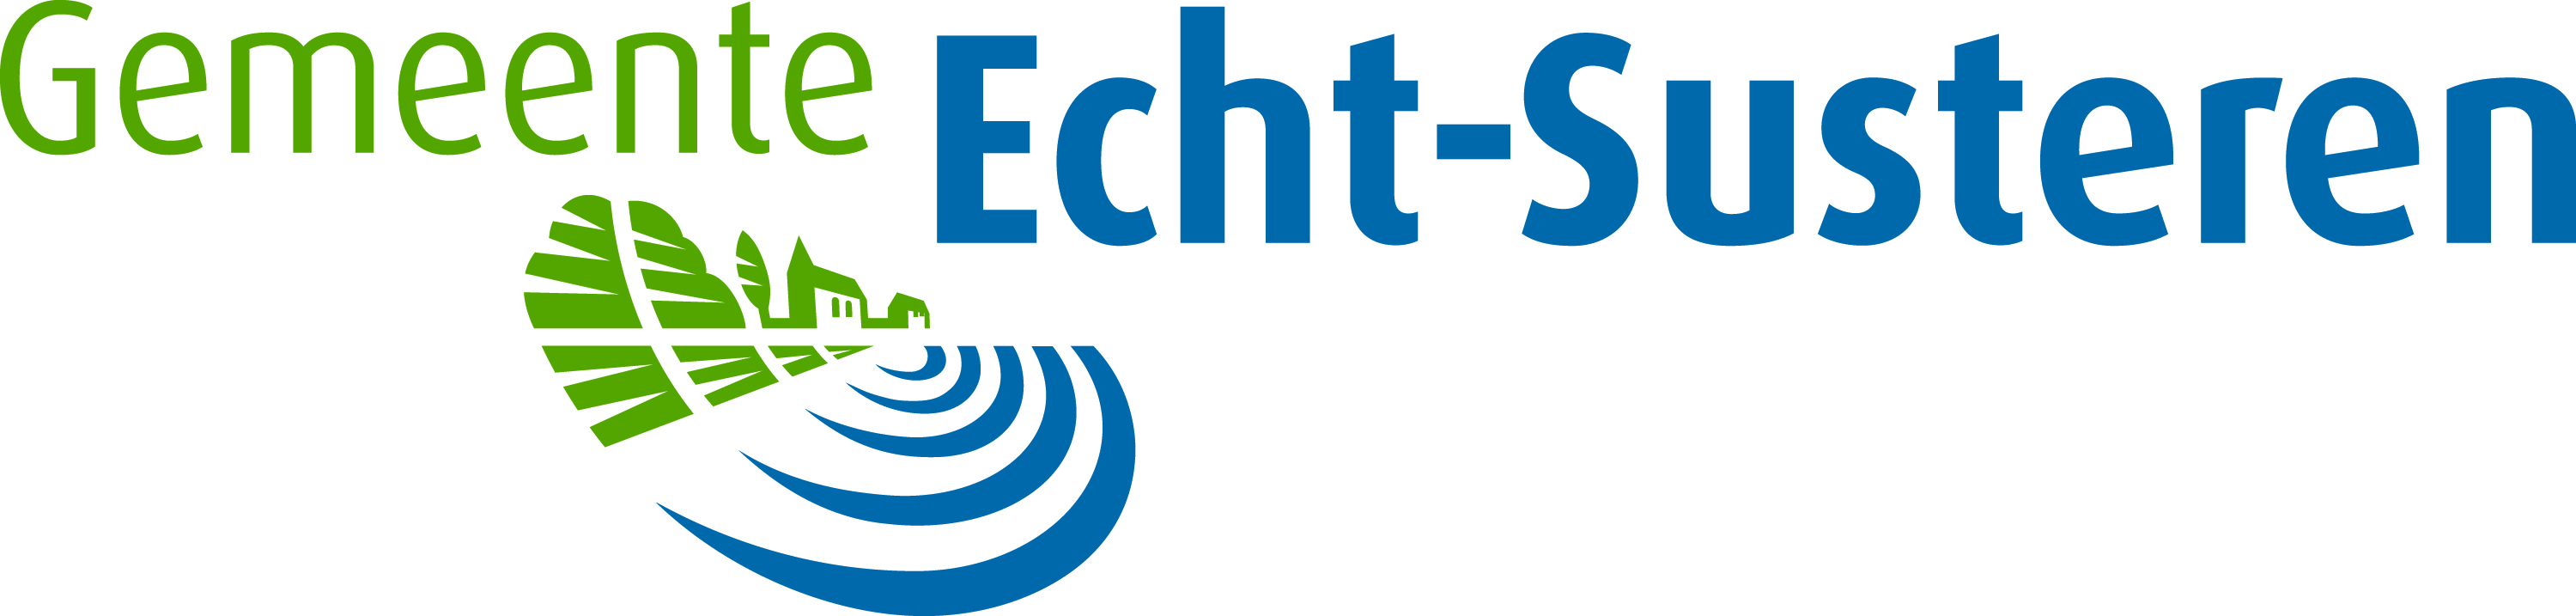 Echt-Susteren Logo